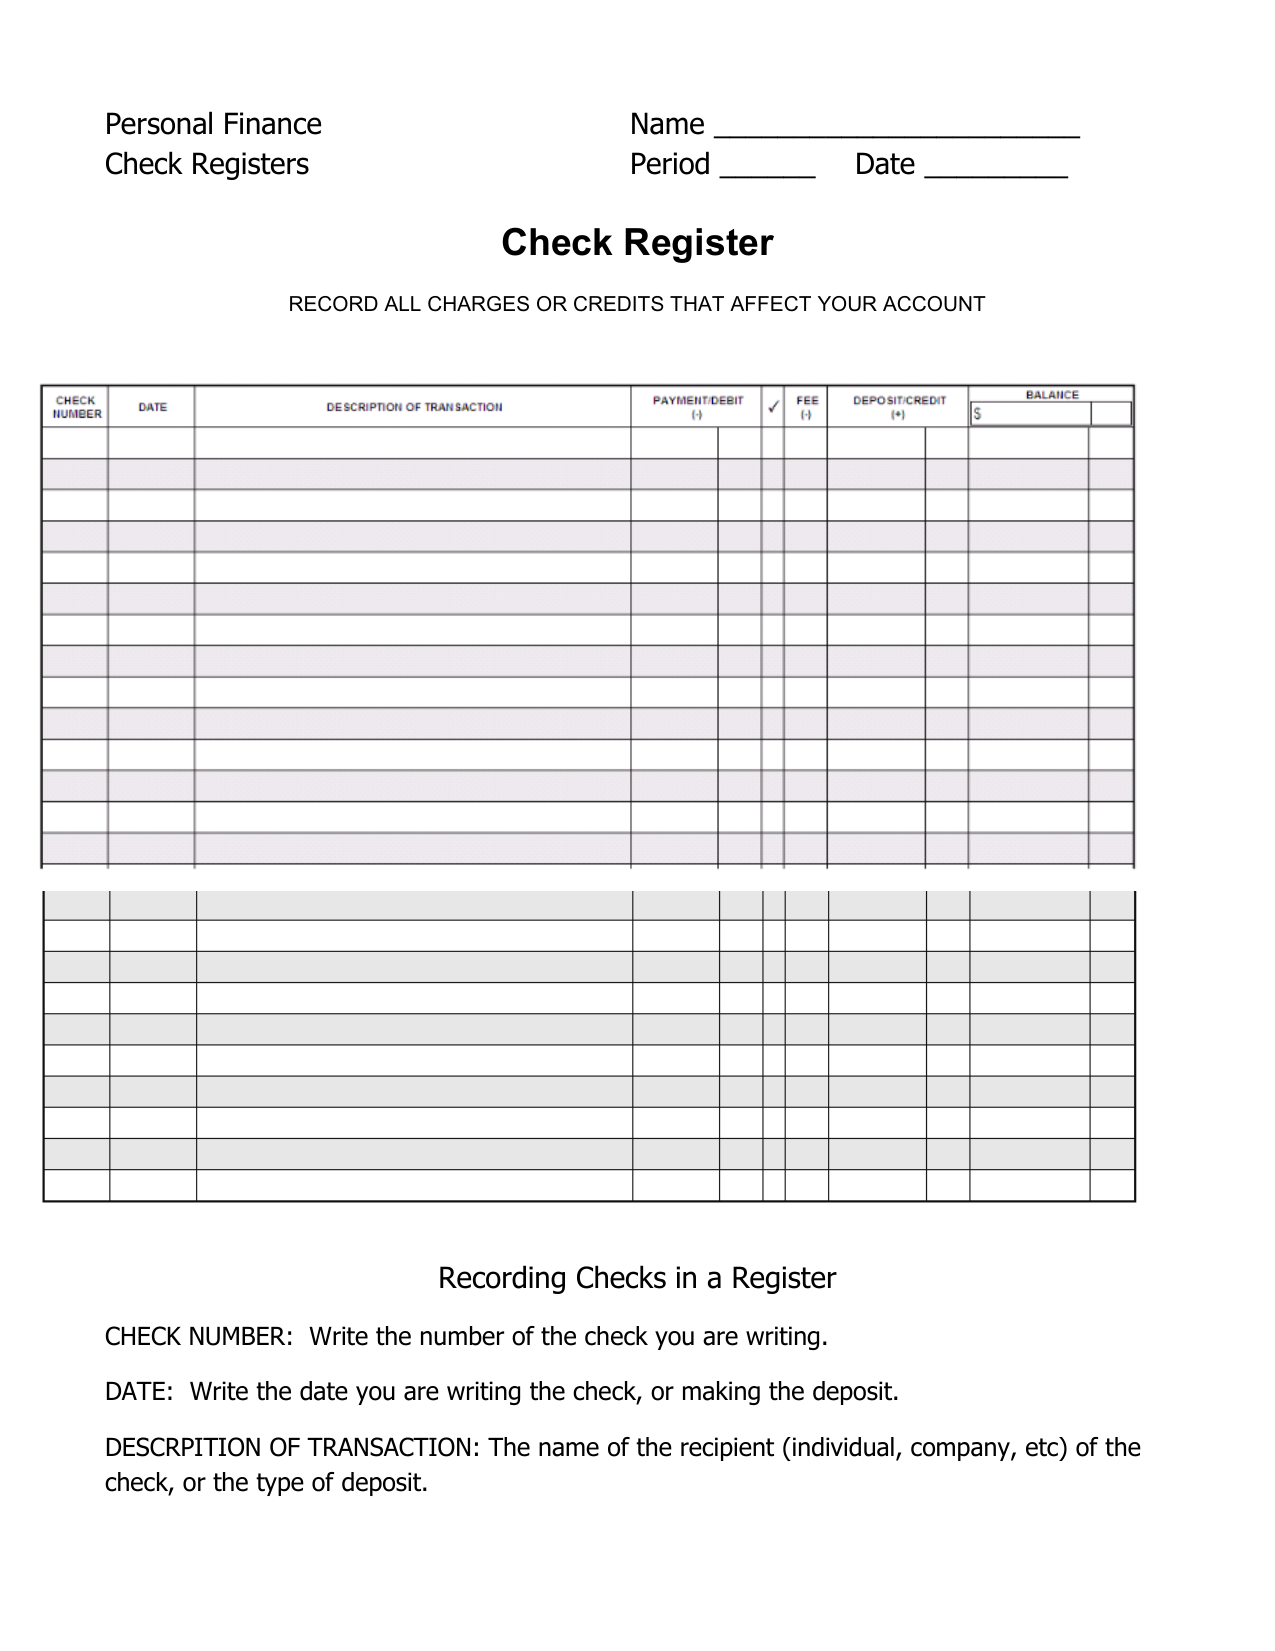 Check Register Inside Checkbook Register Worksheet 1 Answers